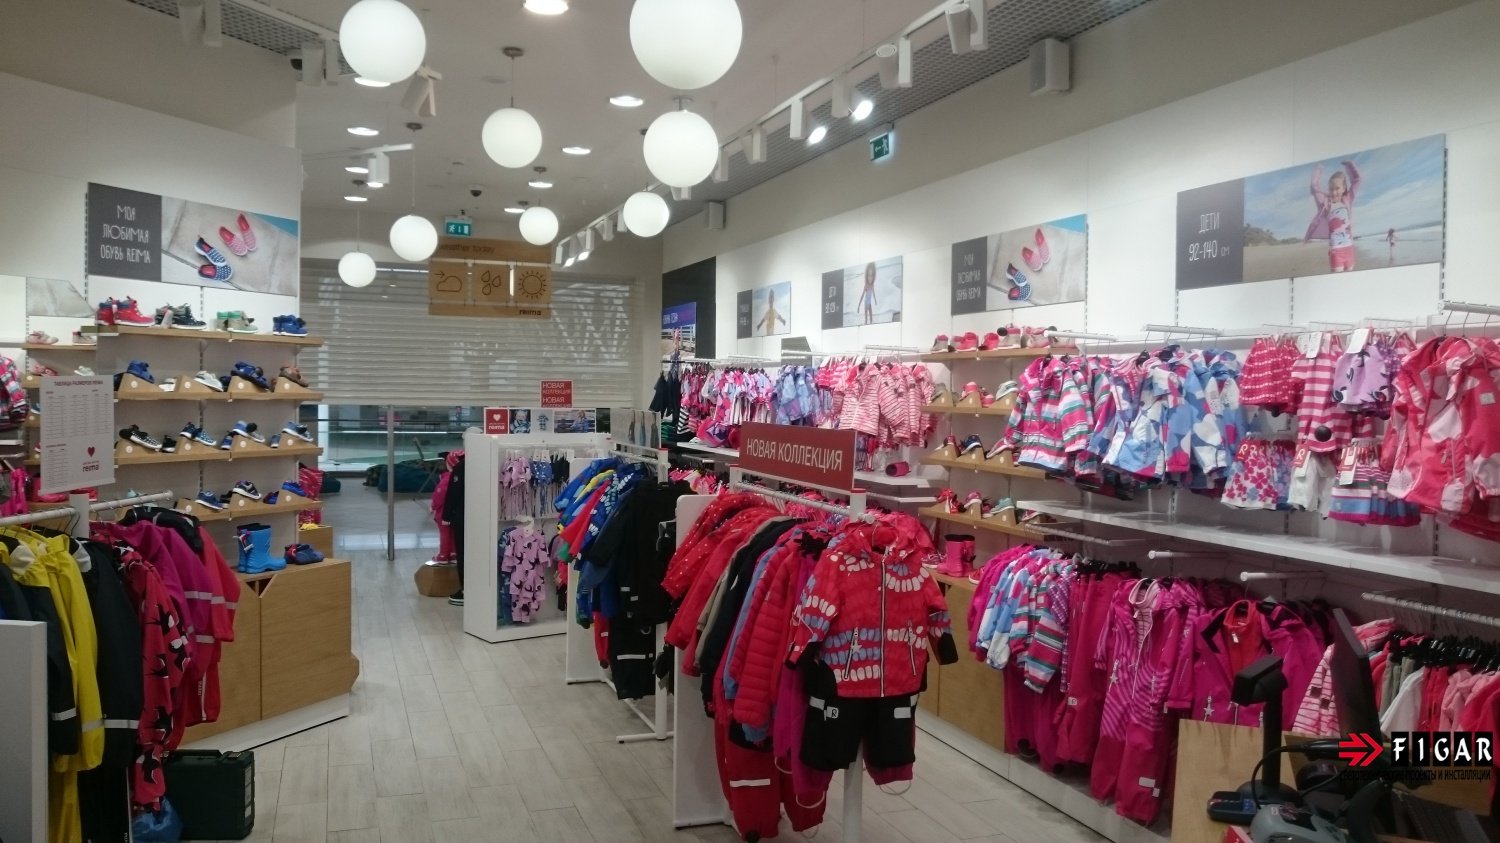 Освещение магазина детской одежды Reima